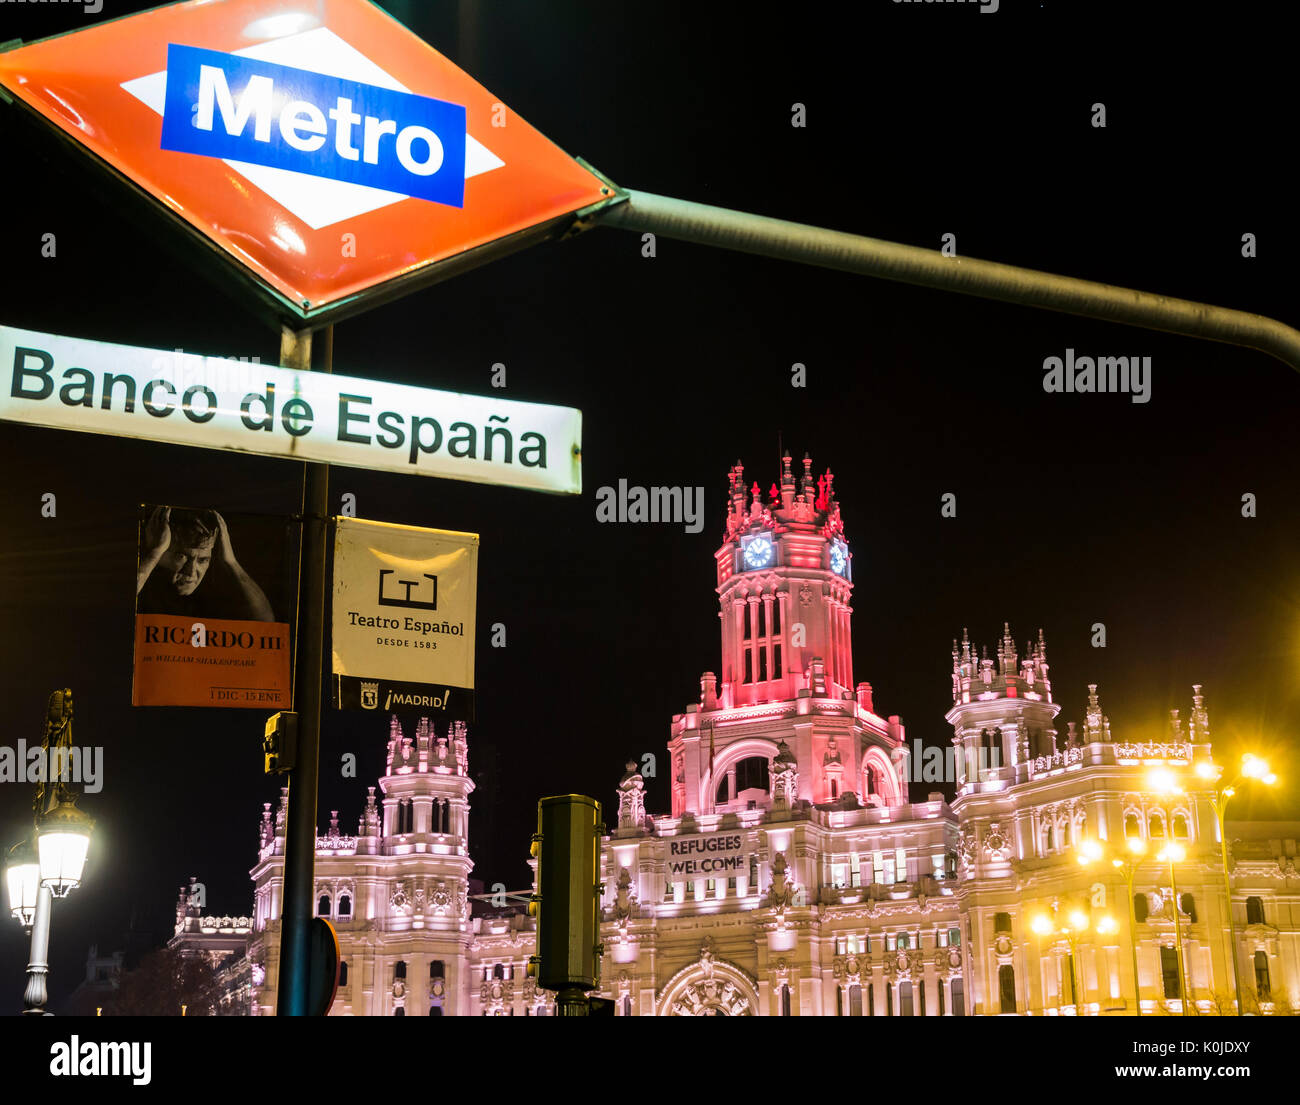 Ayuntamiento de Madrid antiguo Correos visto desde el metro Banco de España. Madrid capital. España Stock Photo